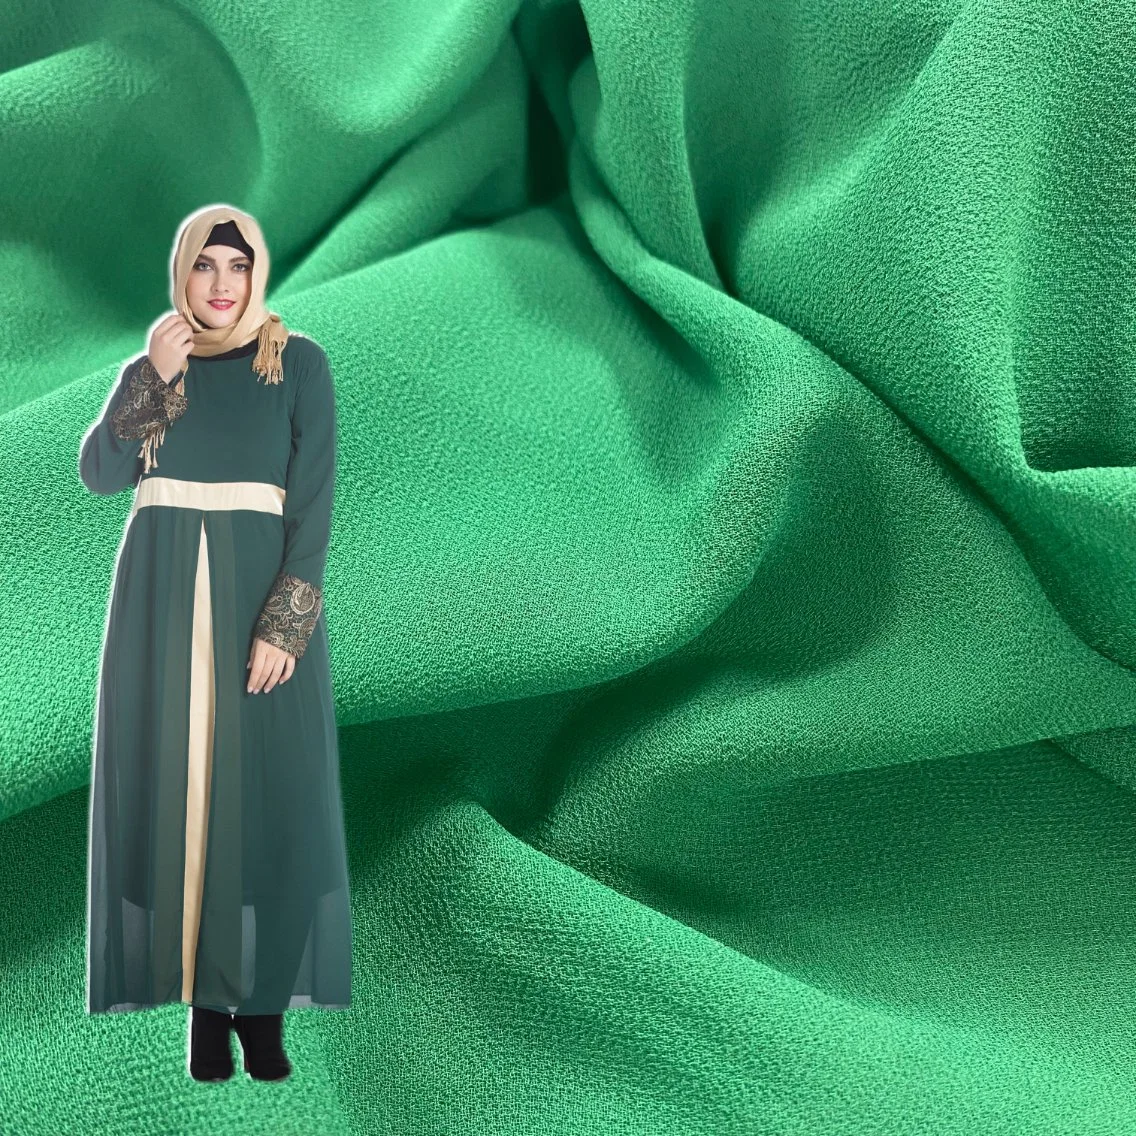 Tn produtos têxteis diferentes tipos de tecidos Chiffon para as mulheres se vestir e Hijab muçulmano de tecido de vestuário